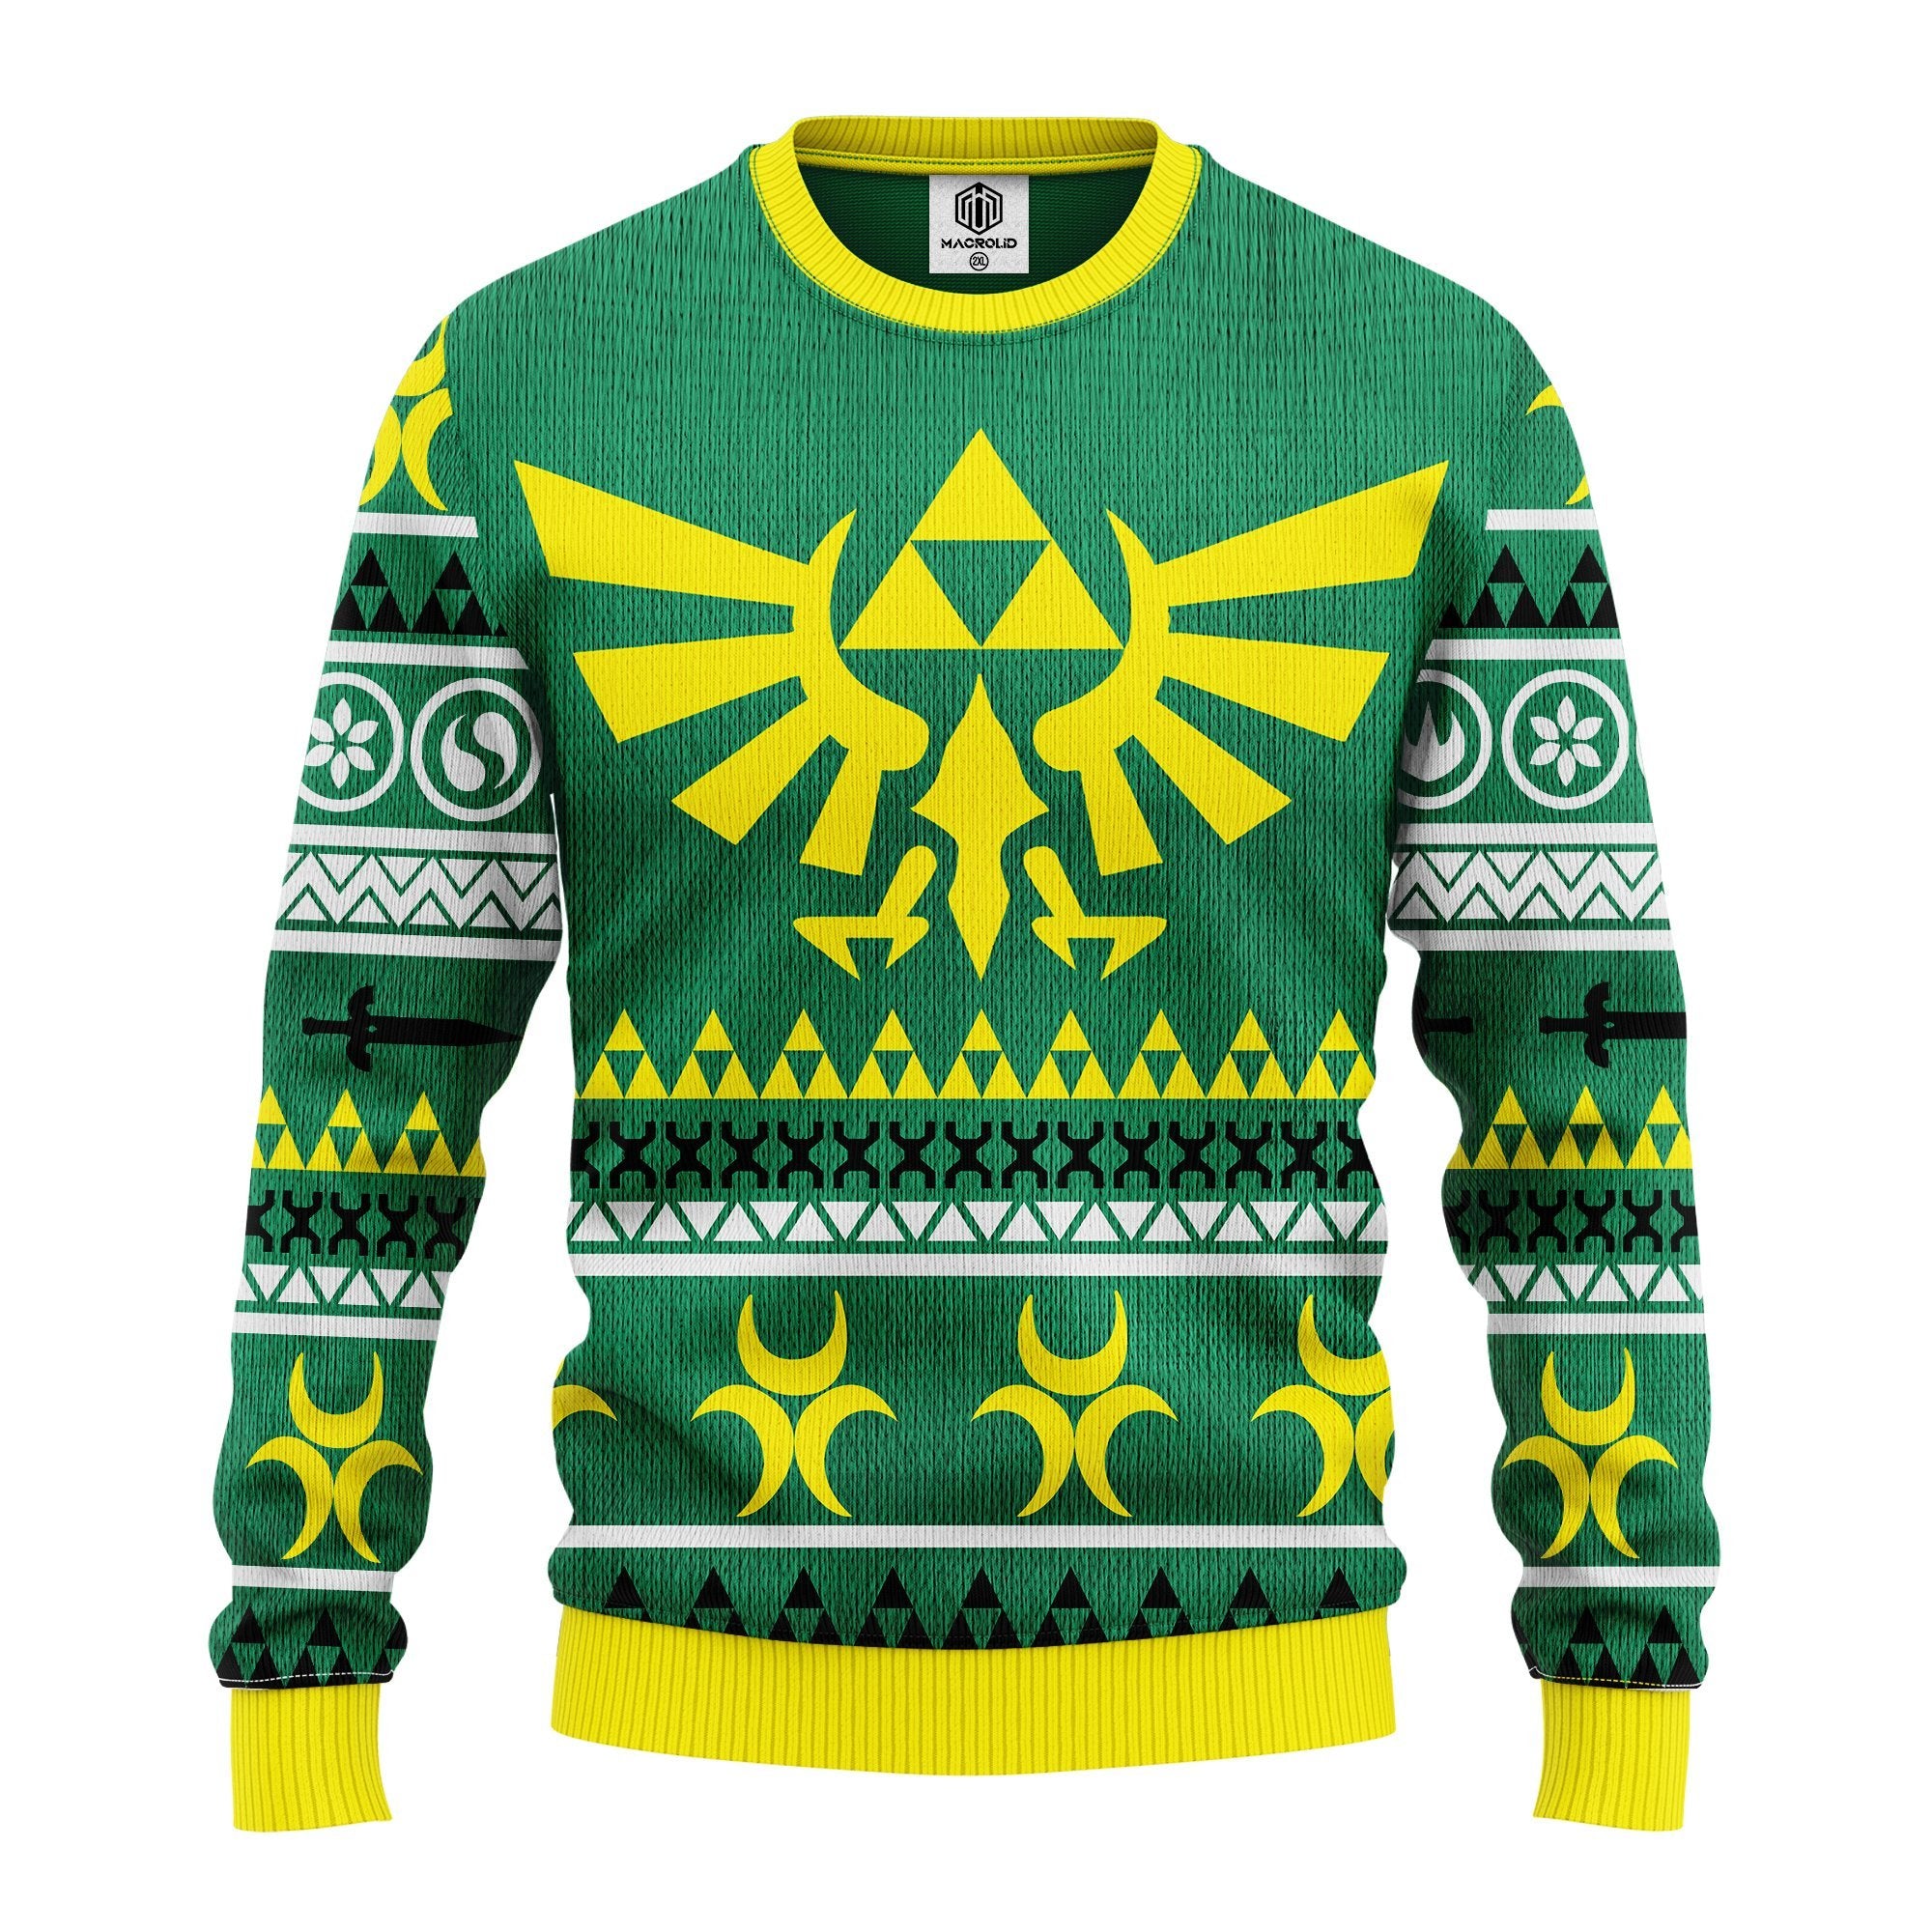 Zelda Green Yellow Ugly Christmas Sweater Amazing Gift Idea Thanksgiving Gift